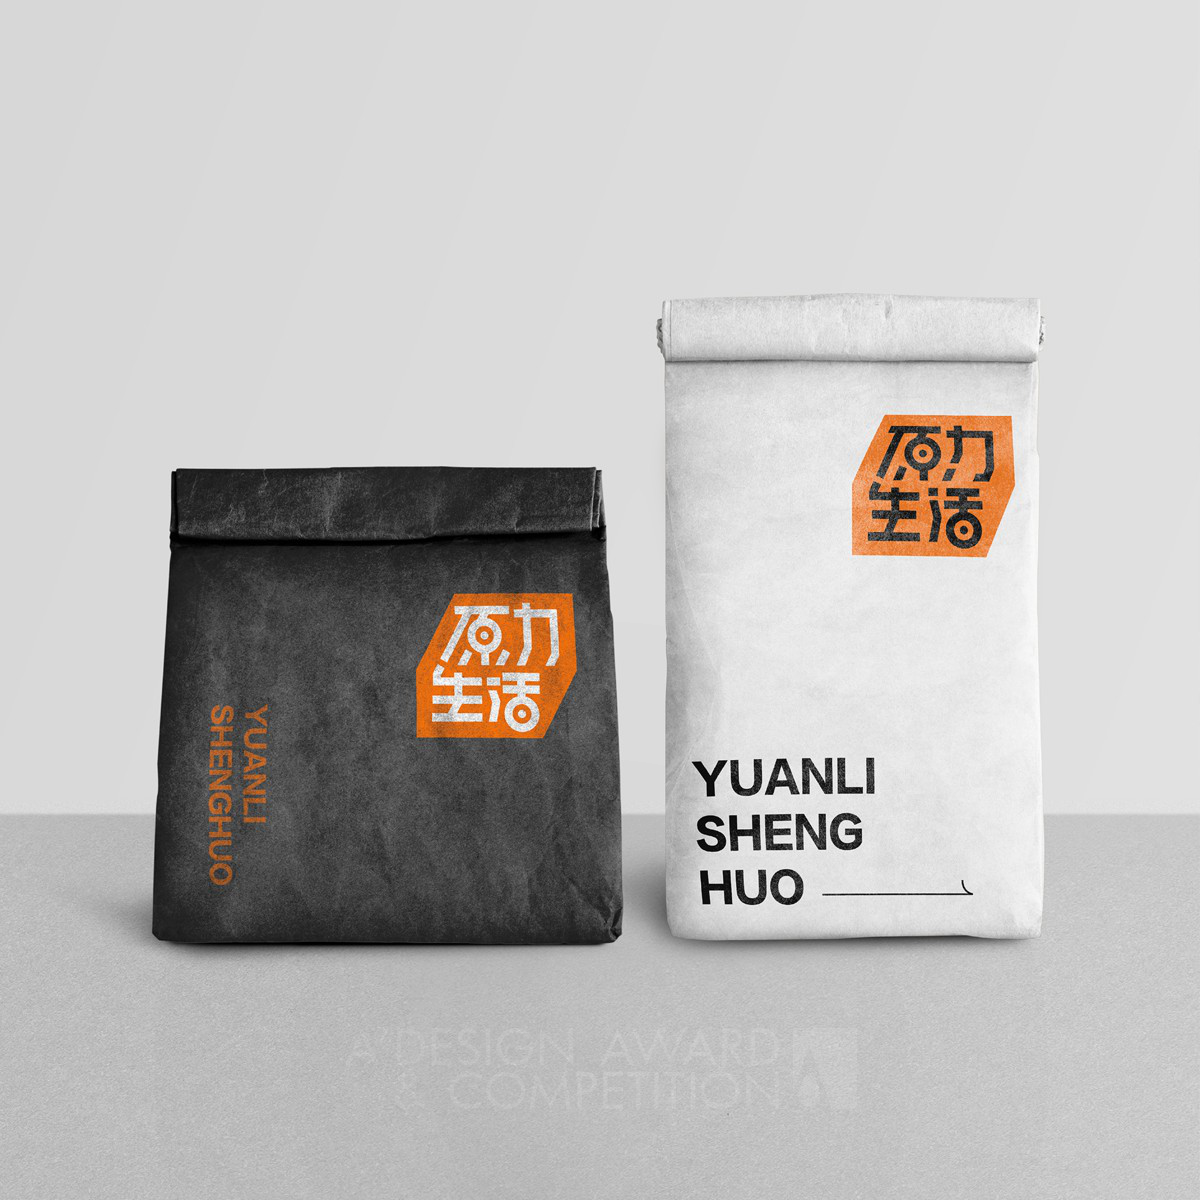 Yuan Li Sheng Huo Brand Logo Design by Fullspeed Network Technologies HangZhou  Co  Ltd 